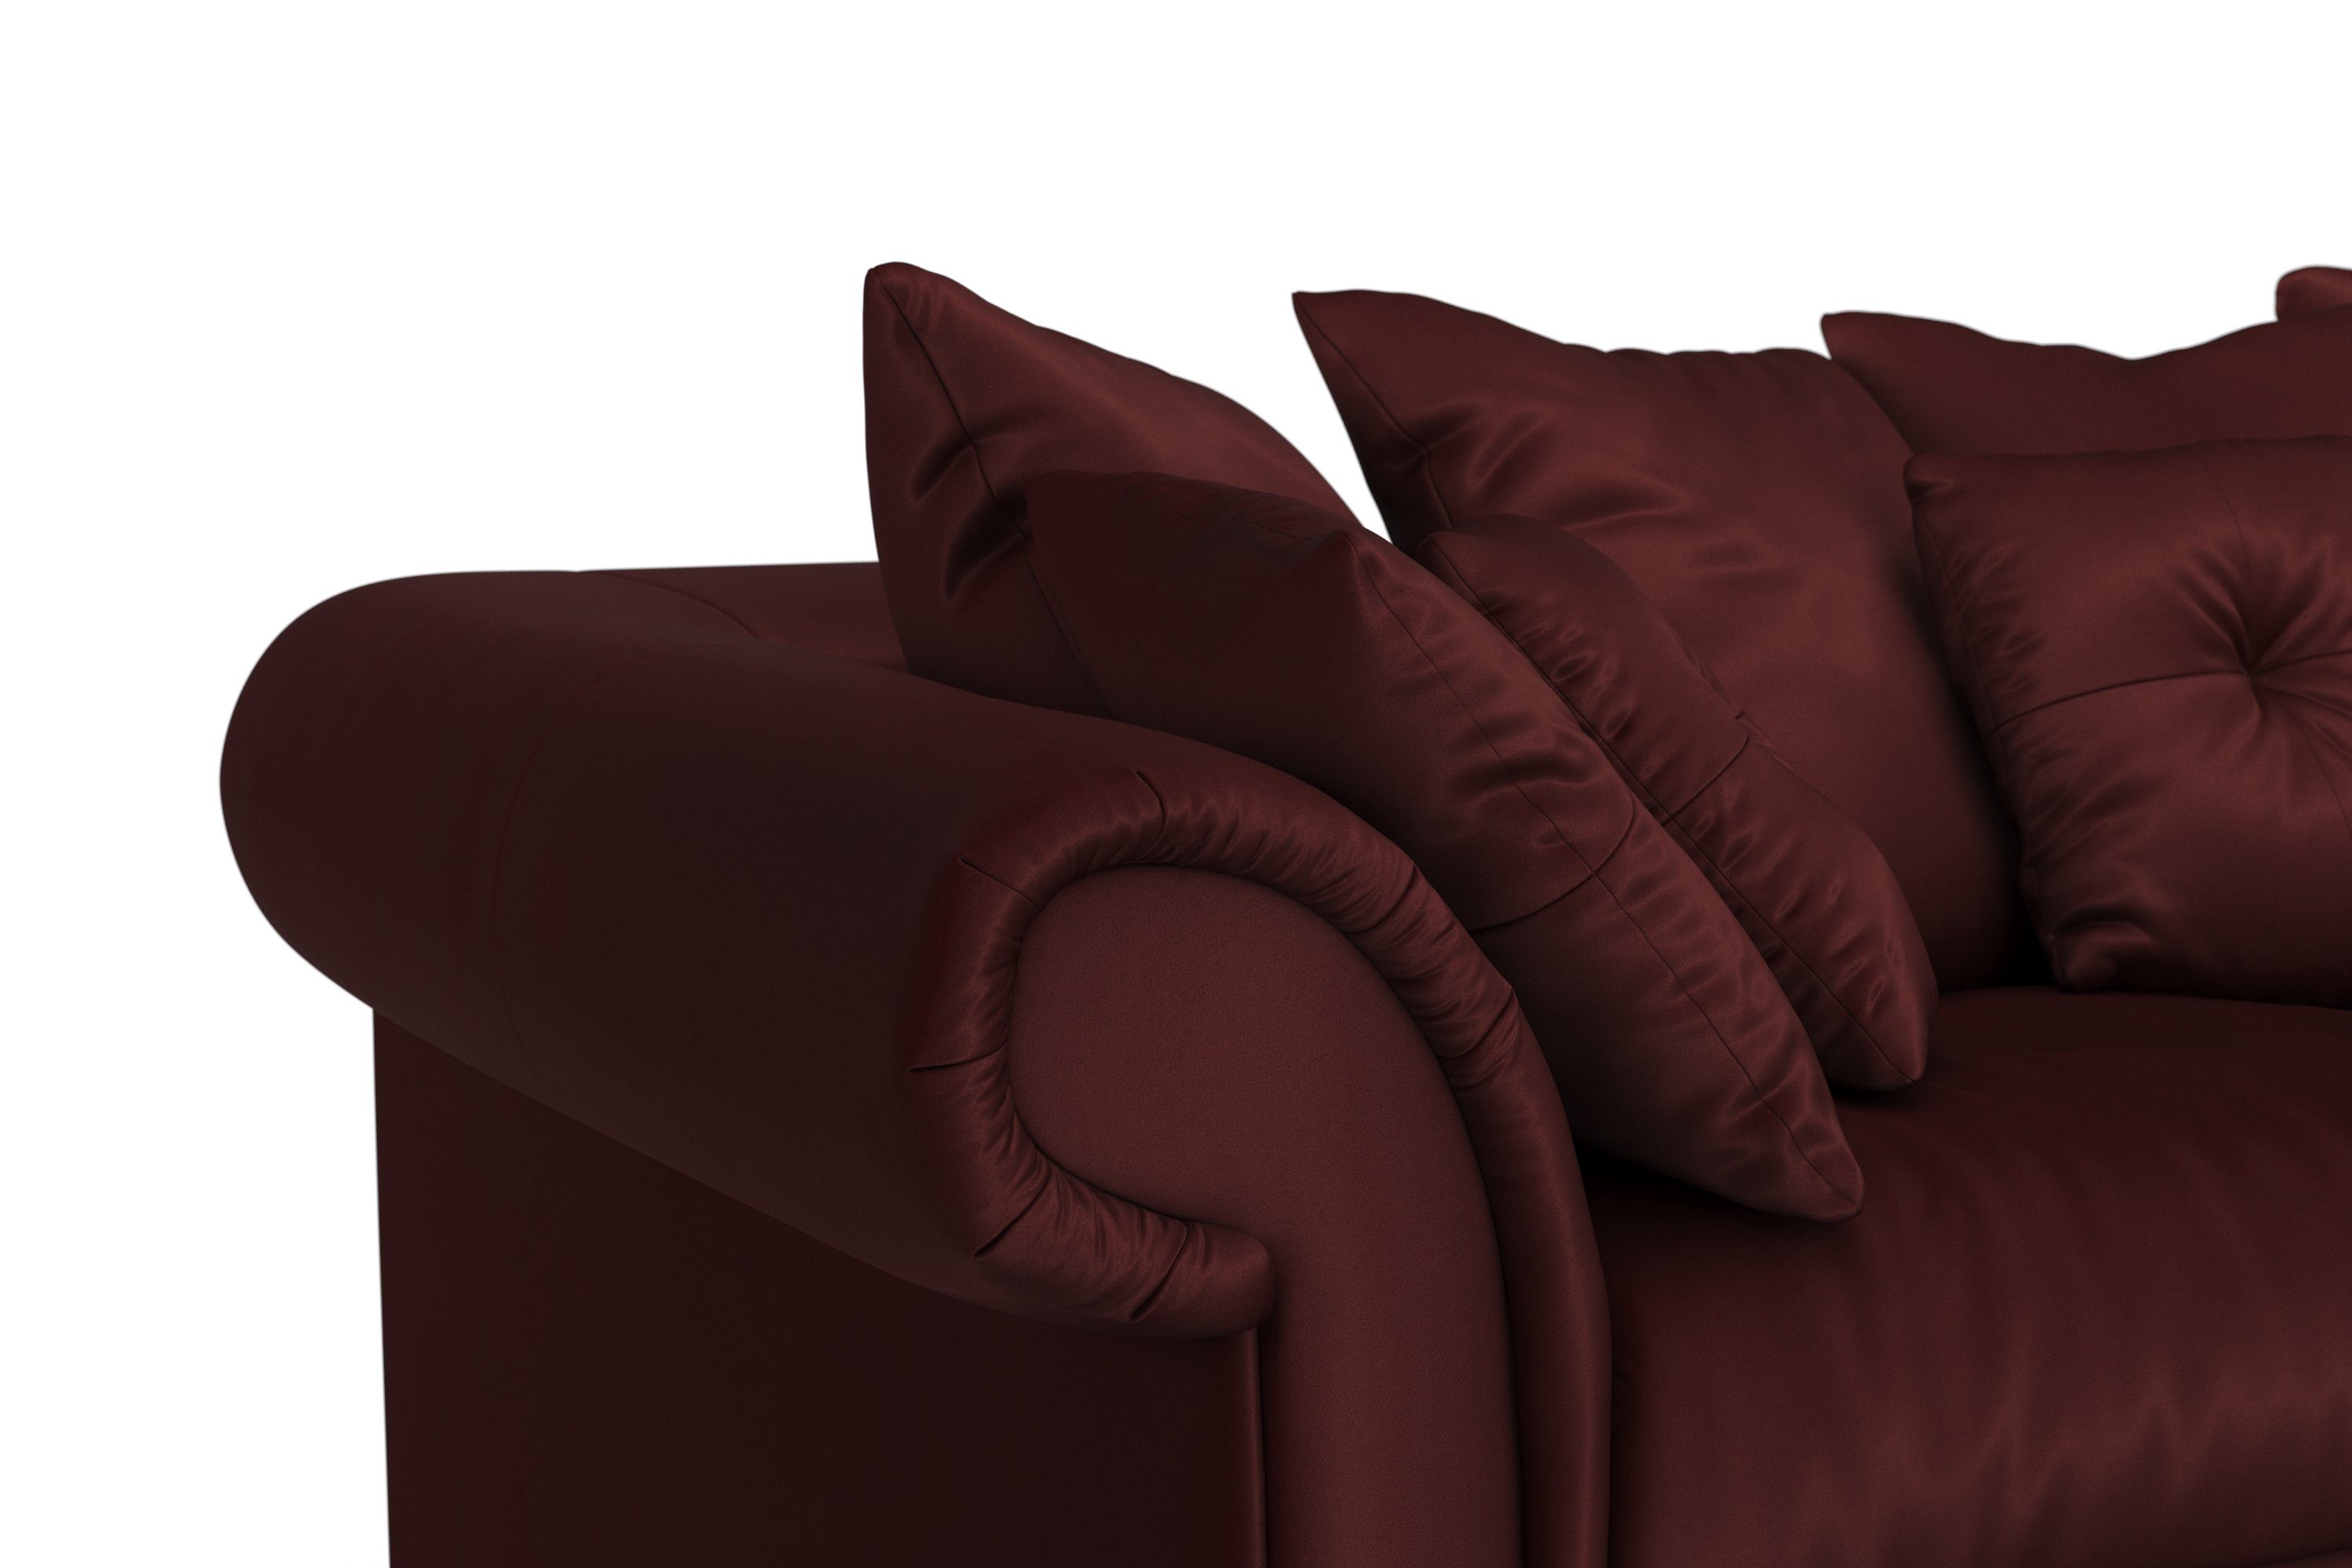 und mit 2 Big-Sofa weichem Design, Teile, zeitlosem viele affaire Megasofa, Queenie Kissen kuschelige Sitzkomfort Home